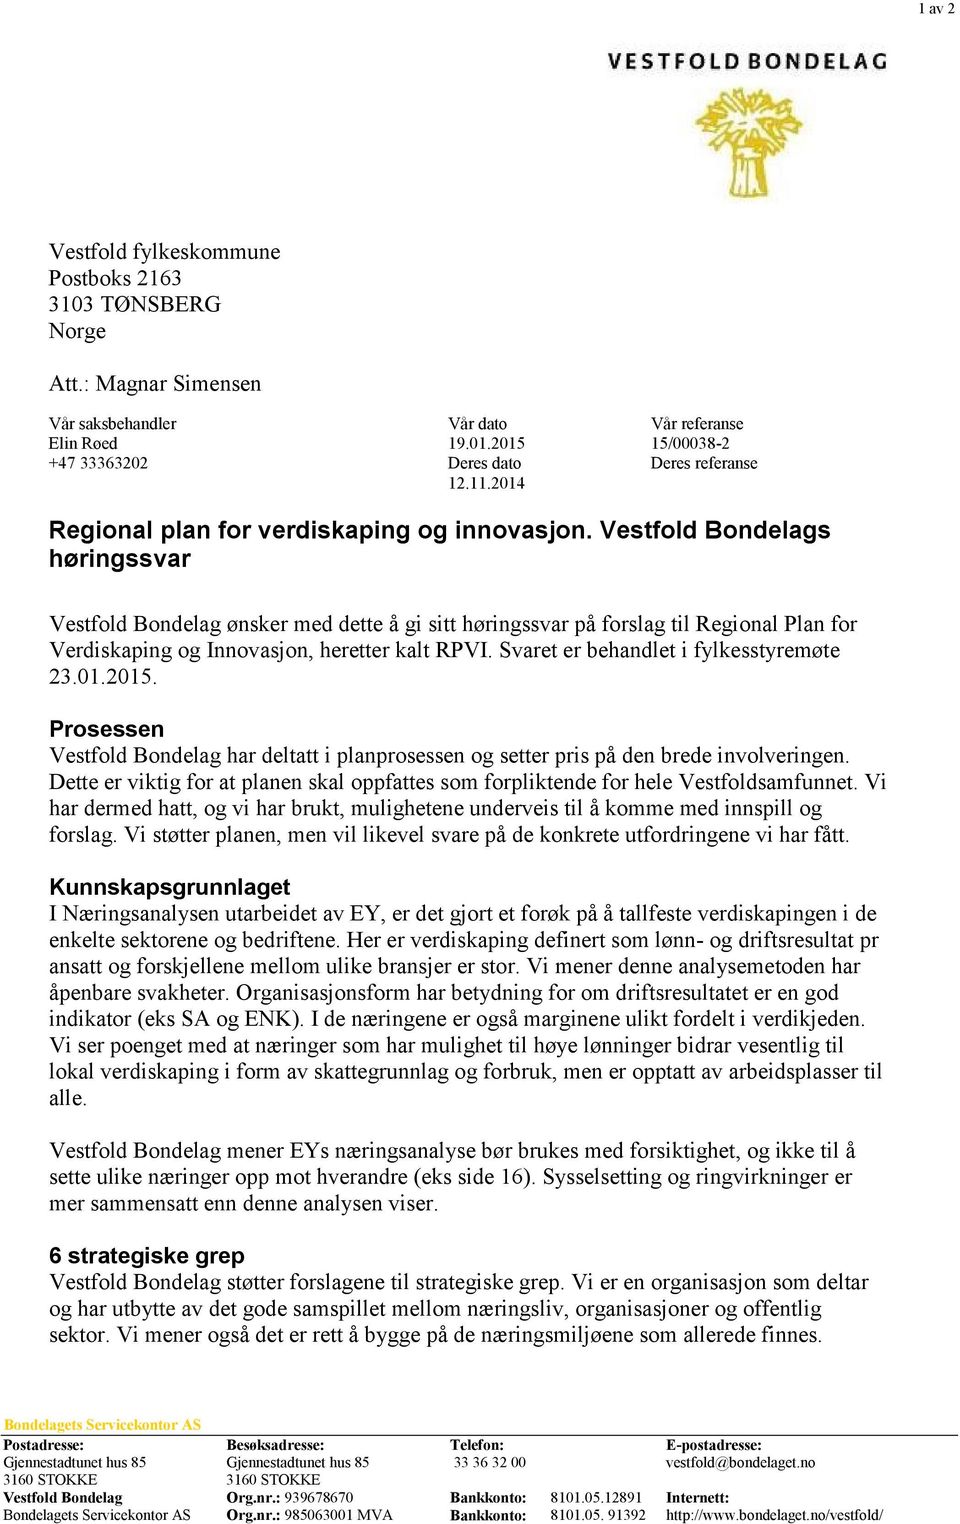 Vestfold Bondelags høringssvar Vestfold Bondelag ønsker med dette å gi sitt høringssvar på forslag til Regional Plan for Verdiskaping og Innovasjon, heretter kalt RPVI.